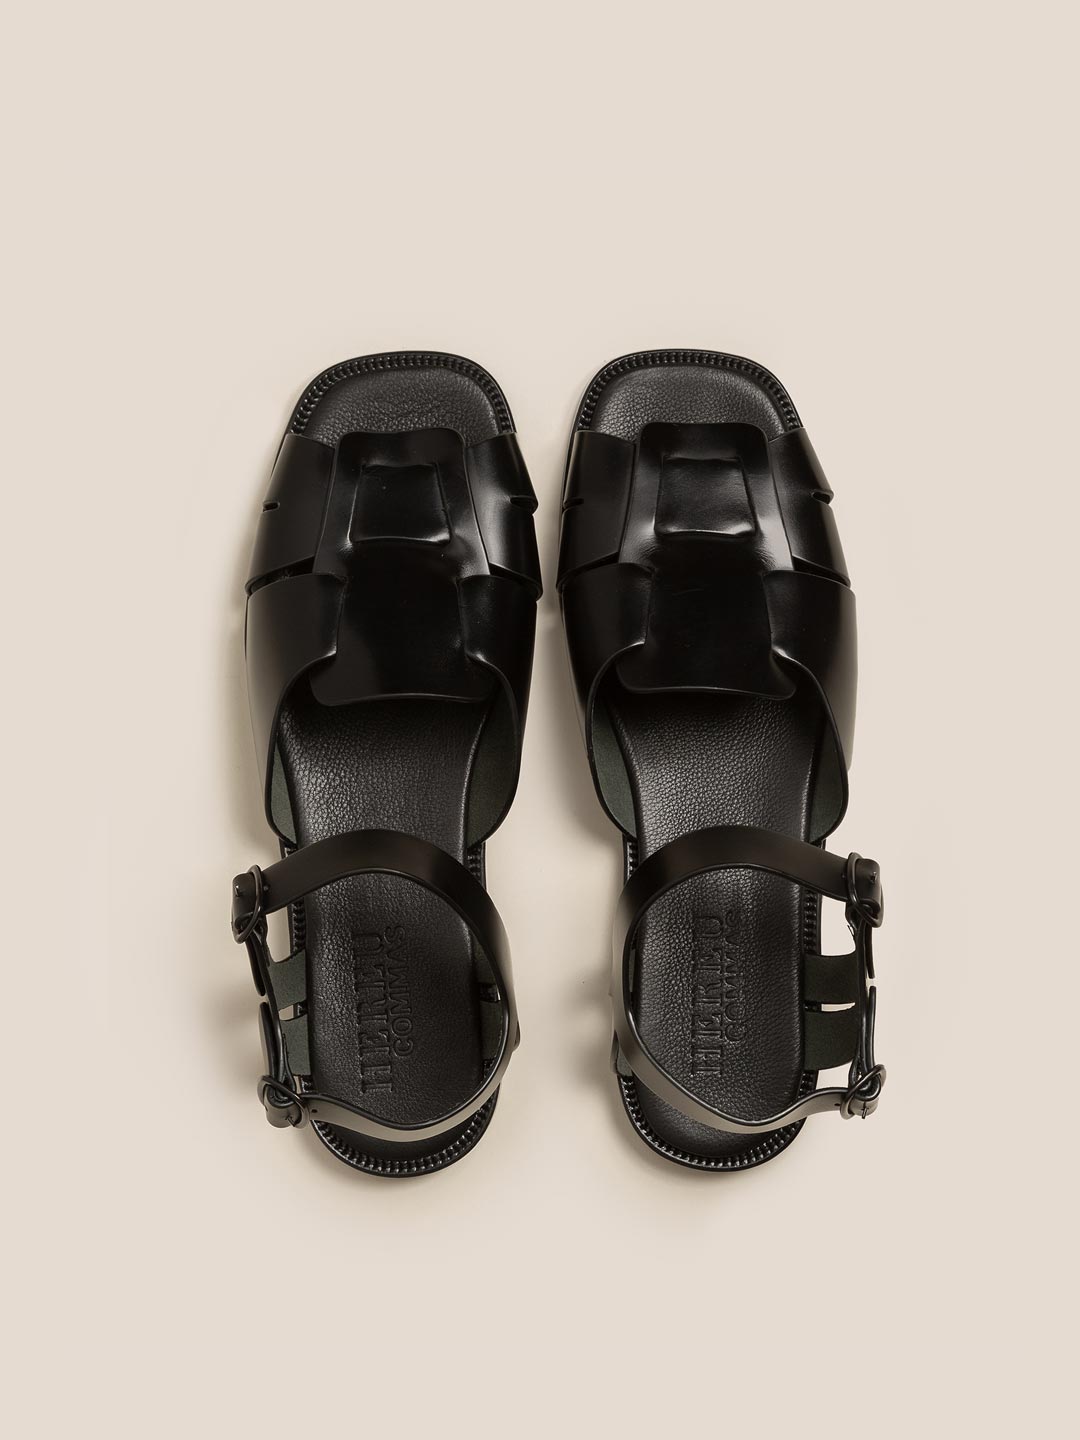 ROCA - Men's Fisherman Sandals - Black